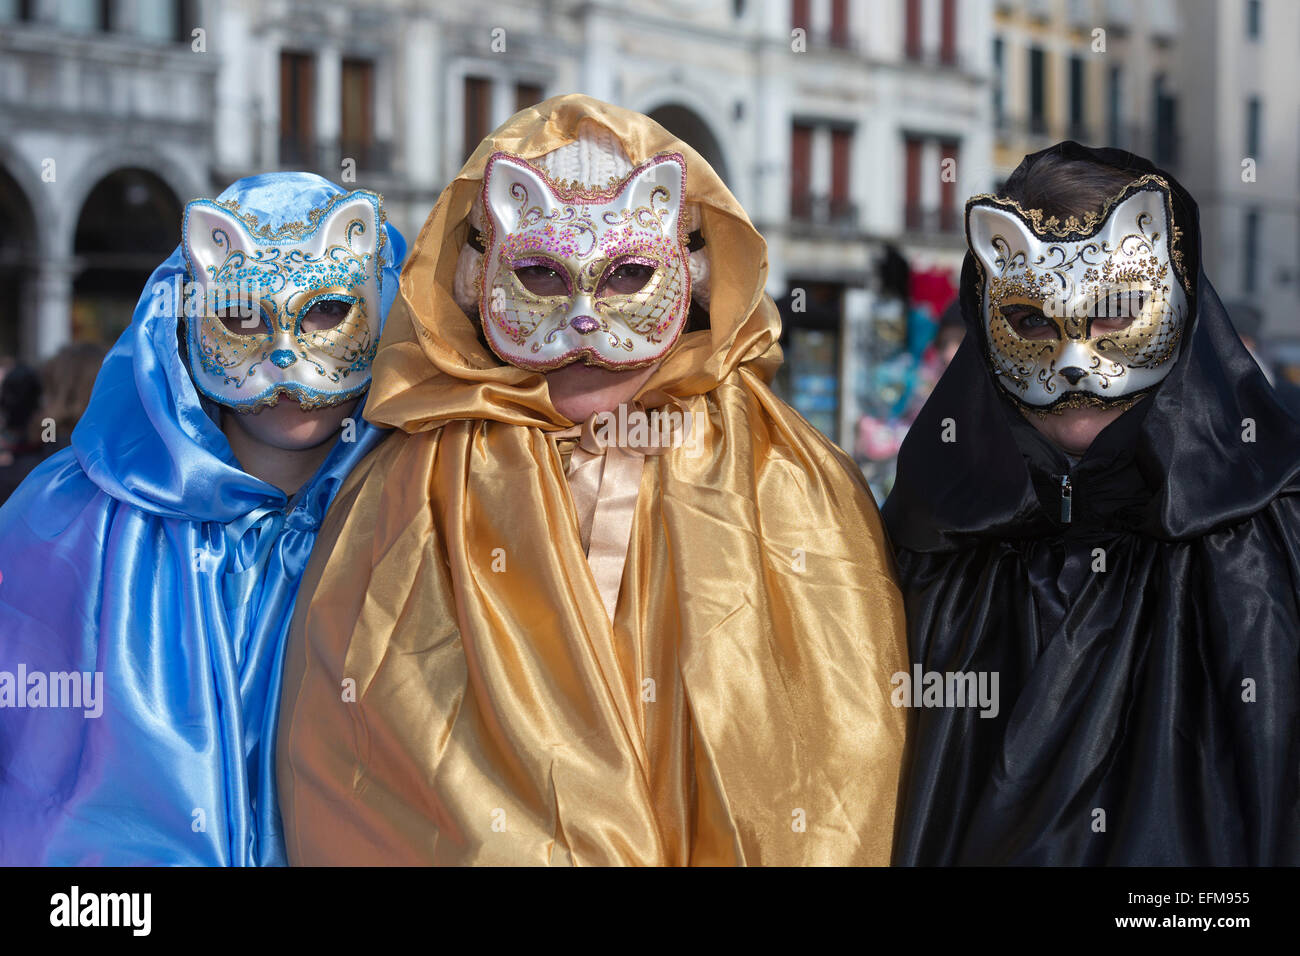 Venezia, Italia. 7 febbraio 2015. Il principale Carnevale a Venezia celebrazioni hanno luogo a questo e il prossimo fine settimana con persone di vestirsi e indossare maschere. Foto: carnivalpix/Alamy Live News Foto Stock